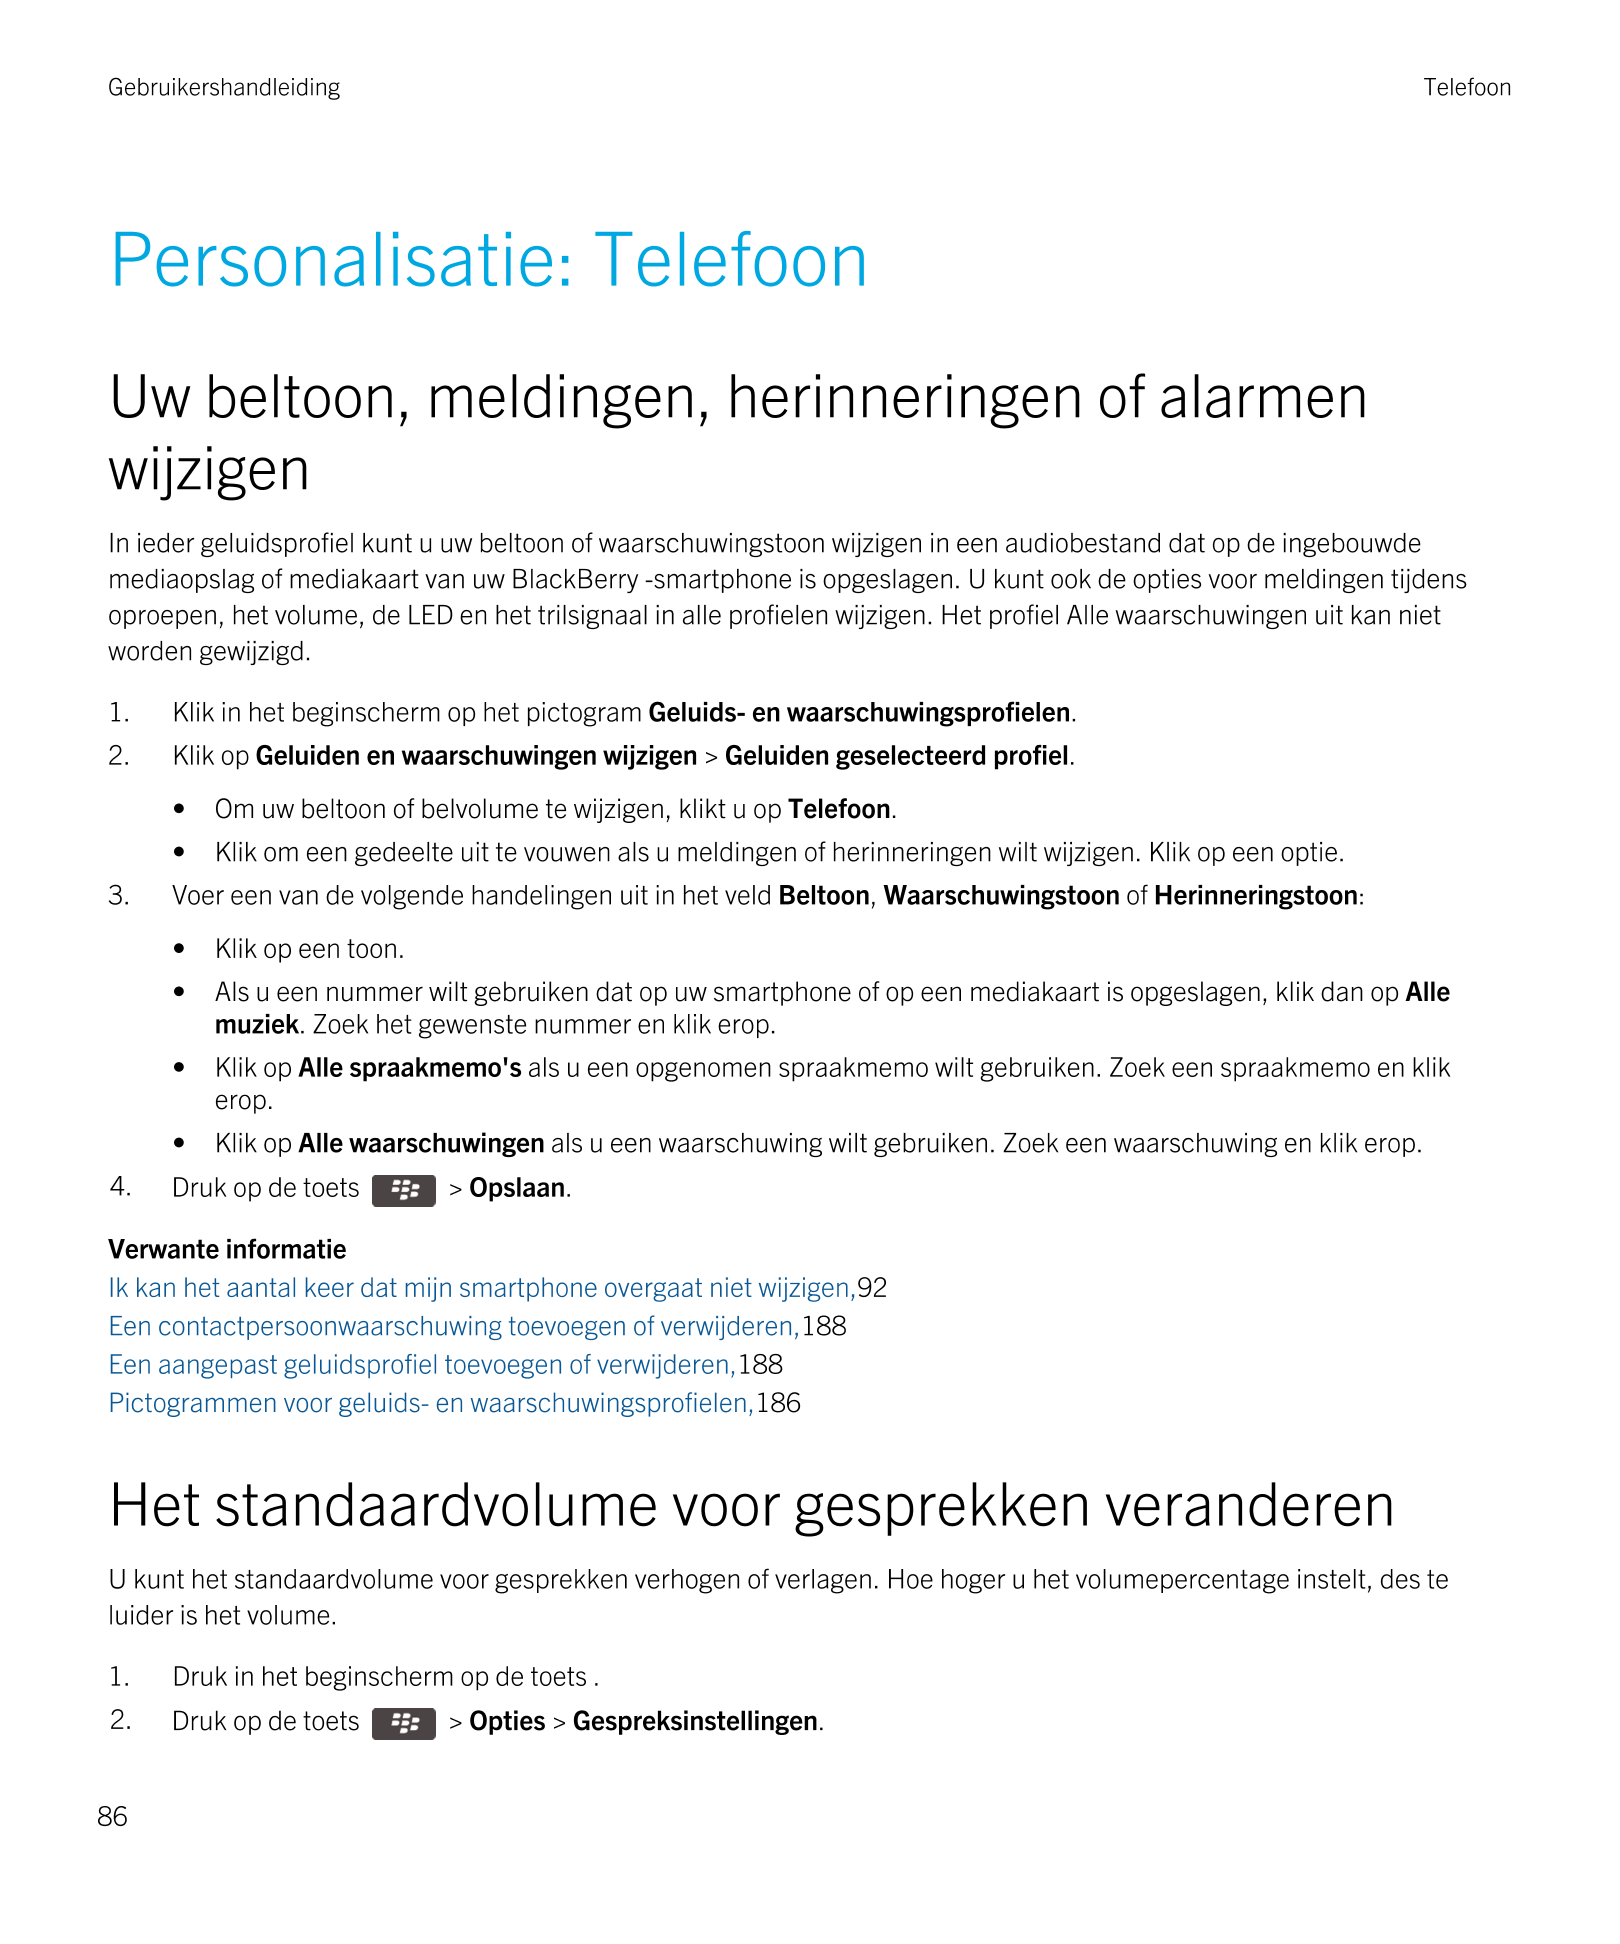 Gebruikershandleiding Telefoon
Personalisatie: Telefoon
Uw beltoon, meldingen, herinneringen of alarmen 
wijzigen
In ieder gelui